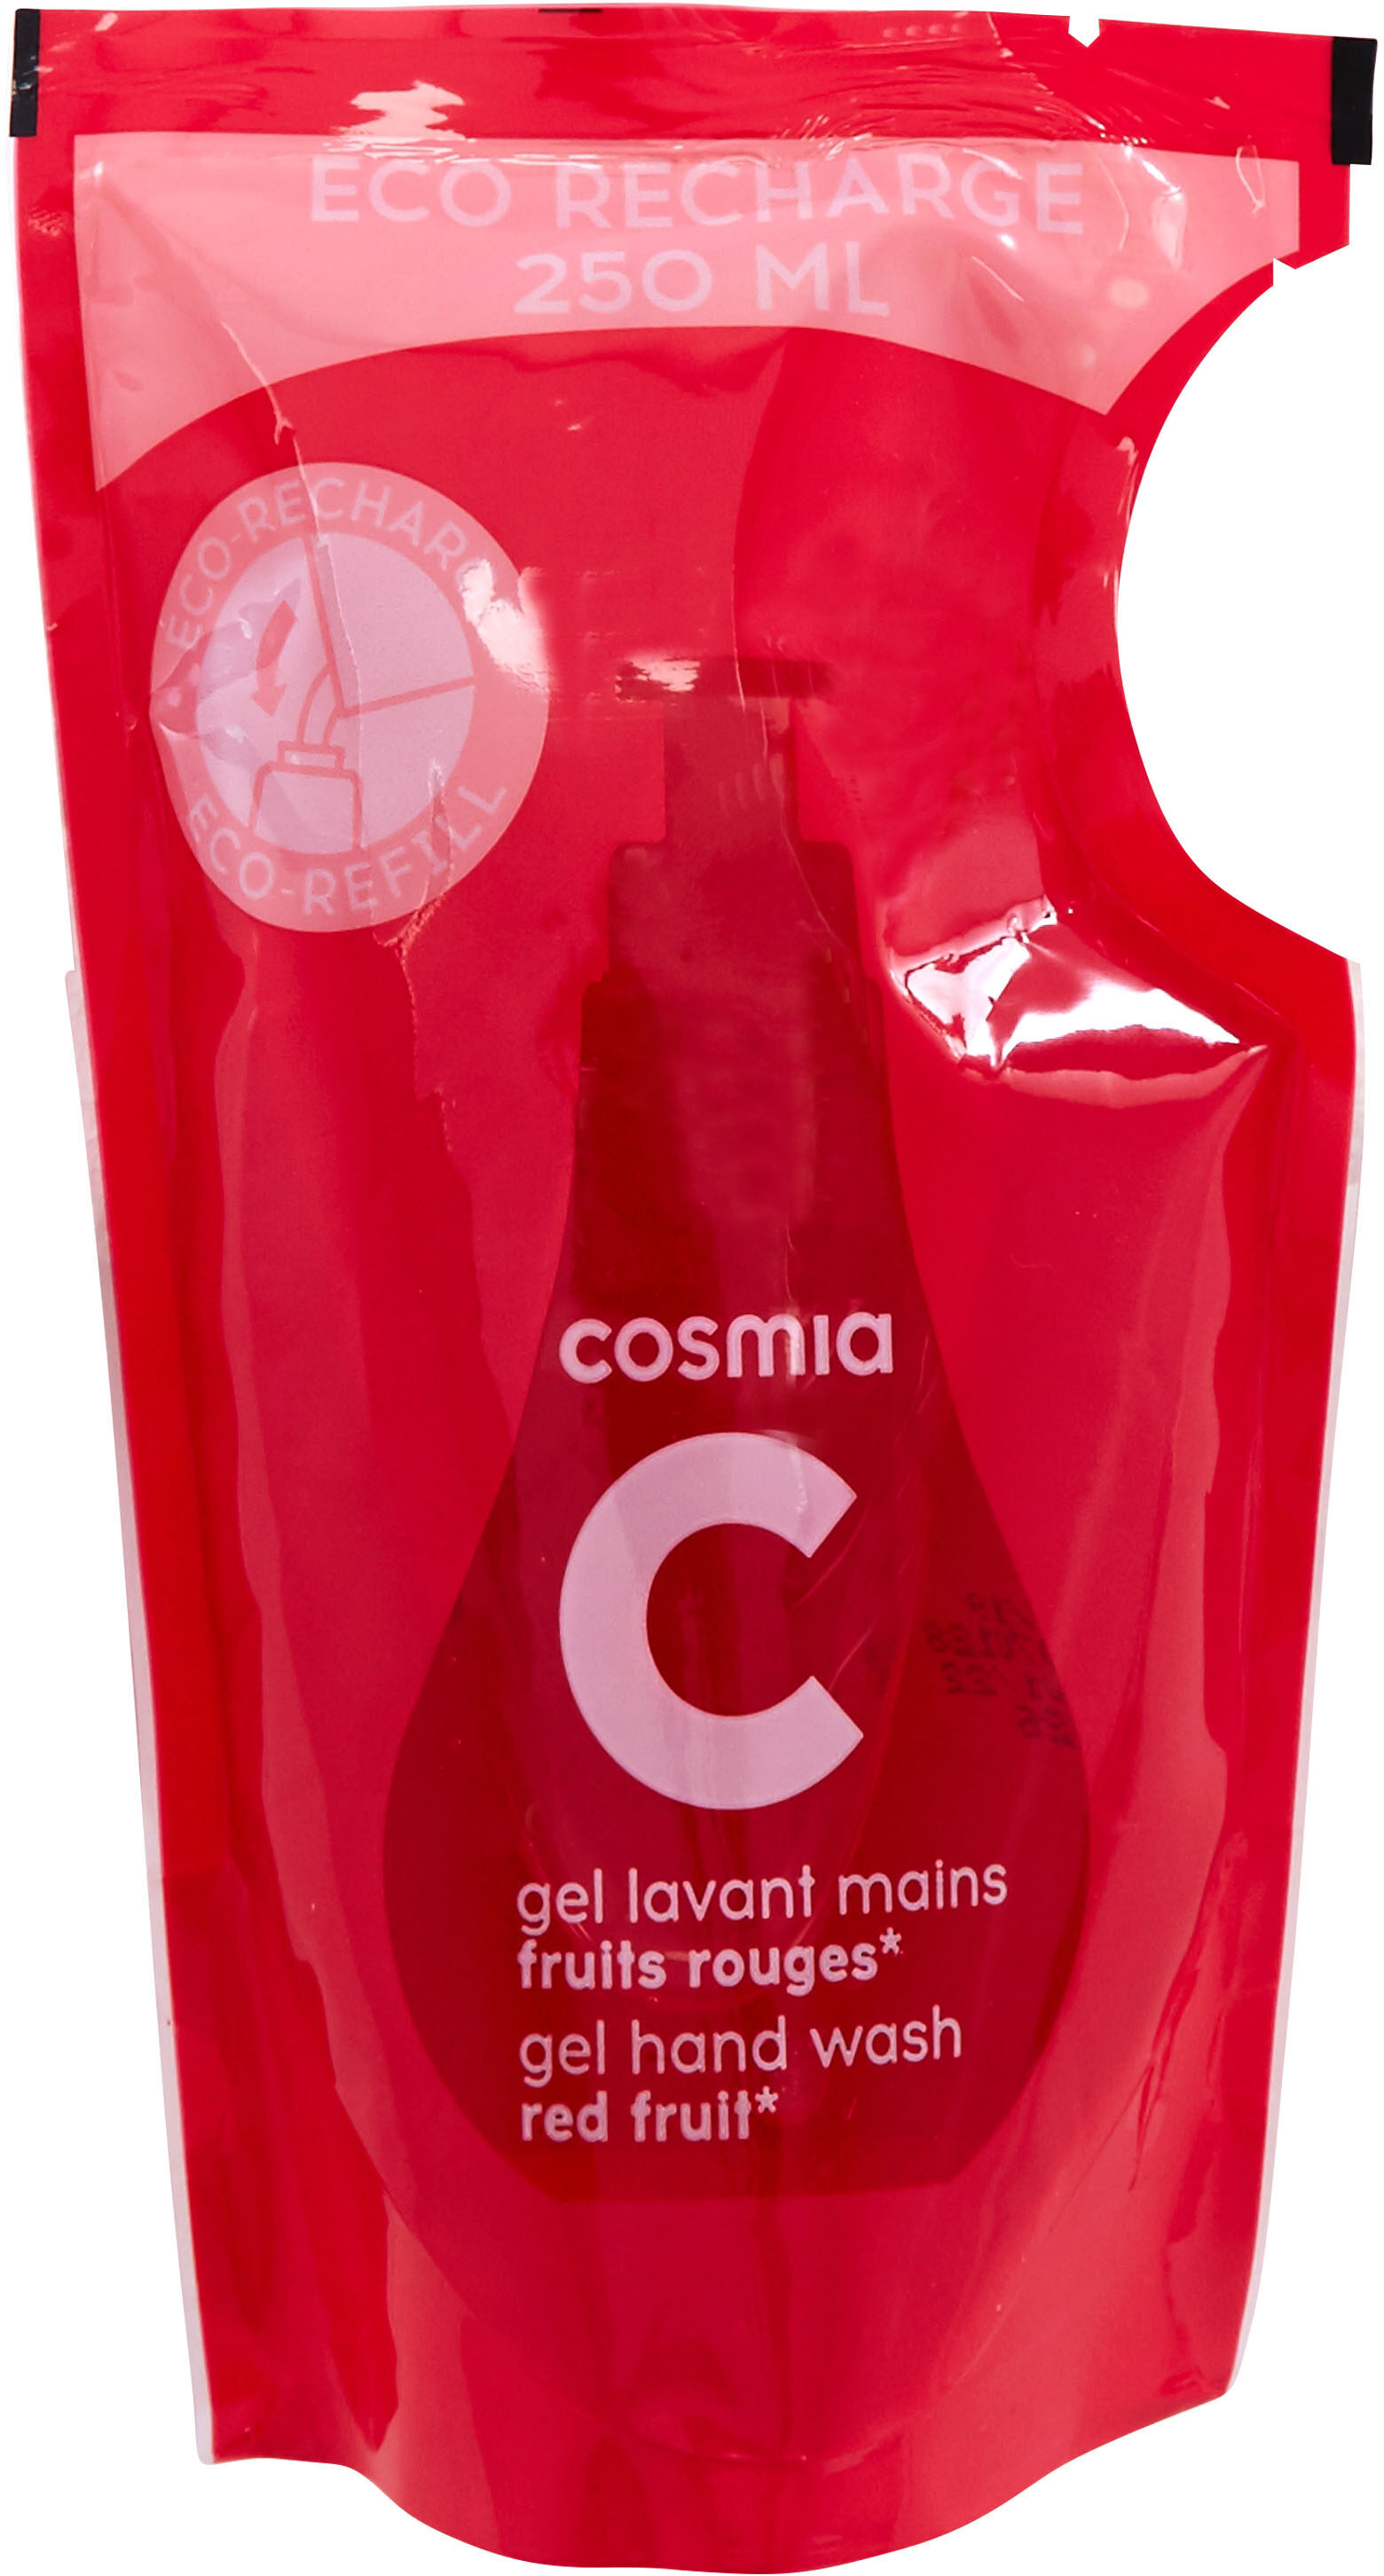 Cosmia - éco-recharge gel lavant mains - parfum fruits rouges* - tous types de peaux - 250ml - Product - fr